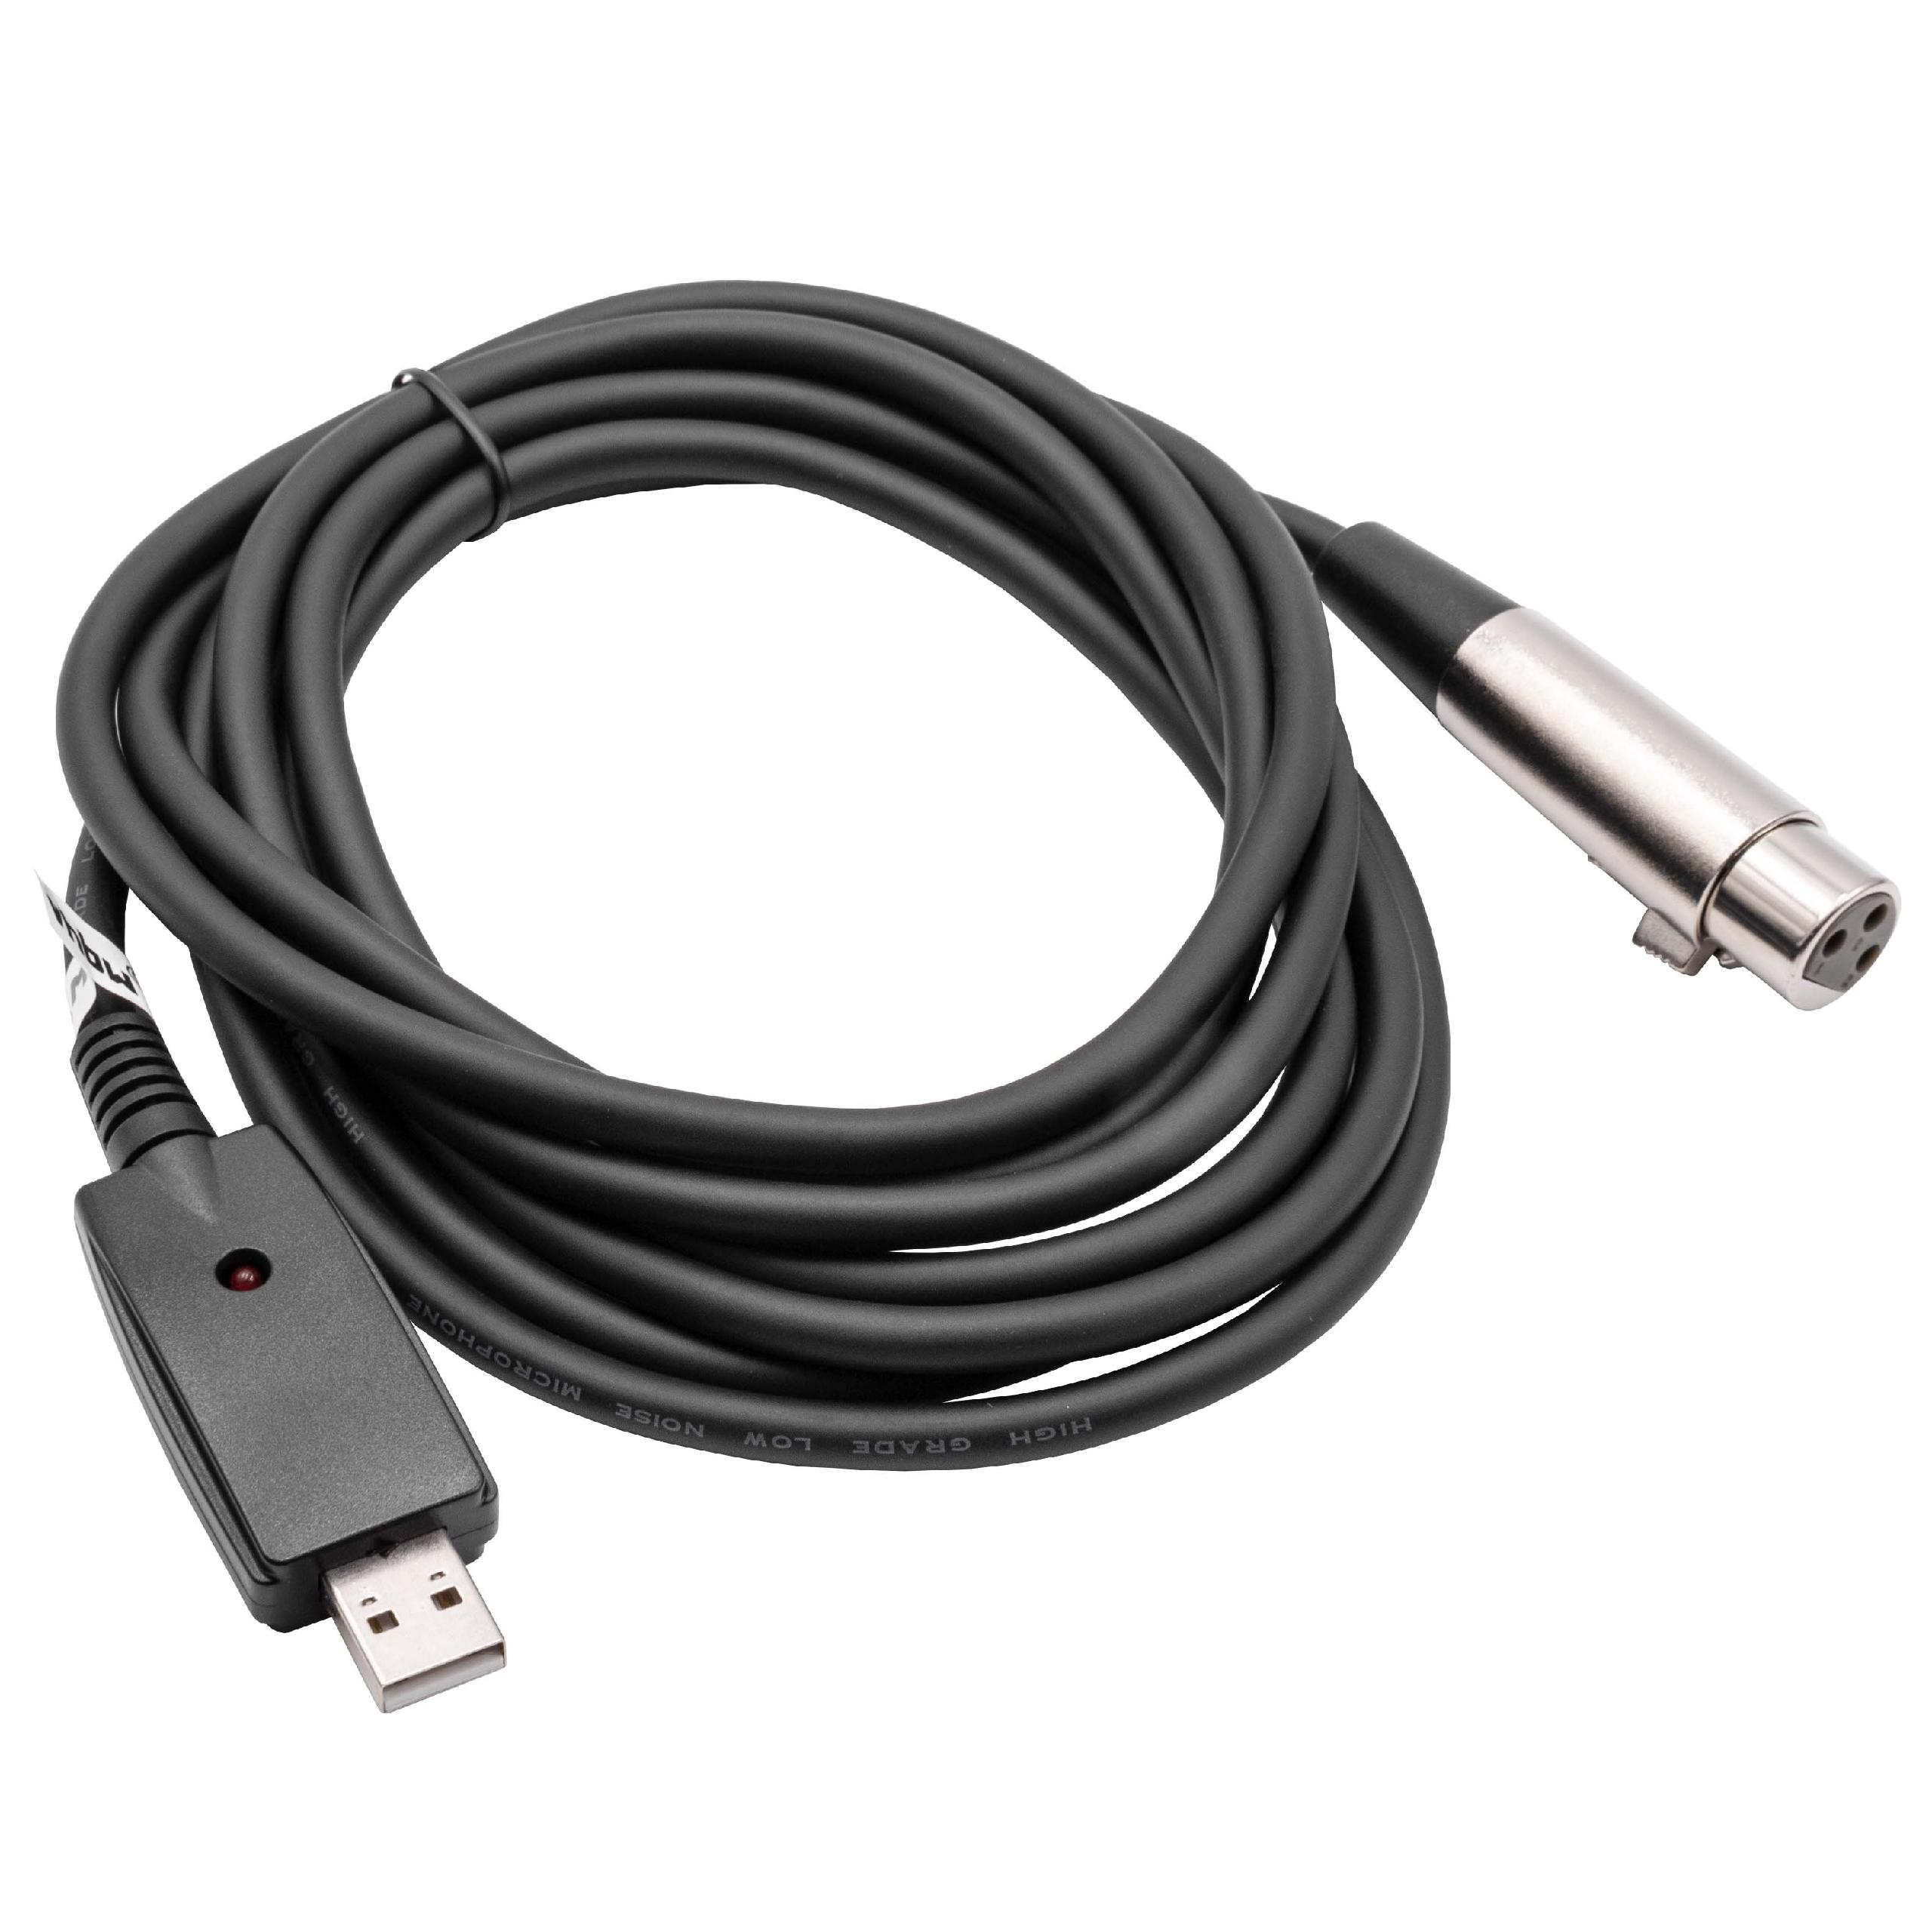 Vhbw câble adaptateur USB 2.0 vers prise XLR 3-poles - 2.8m câble